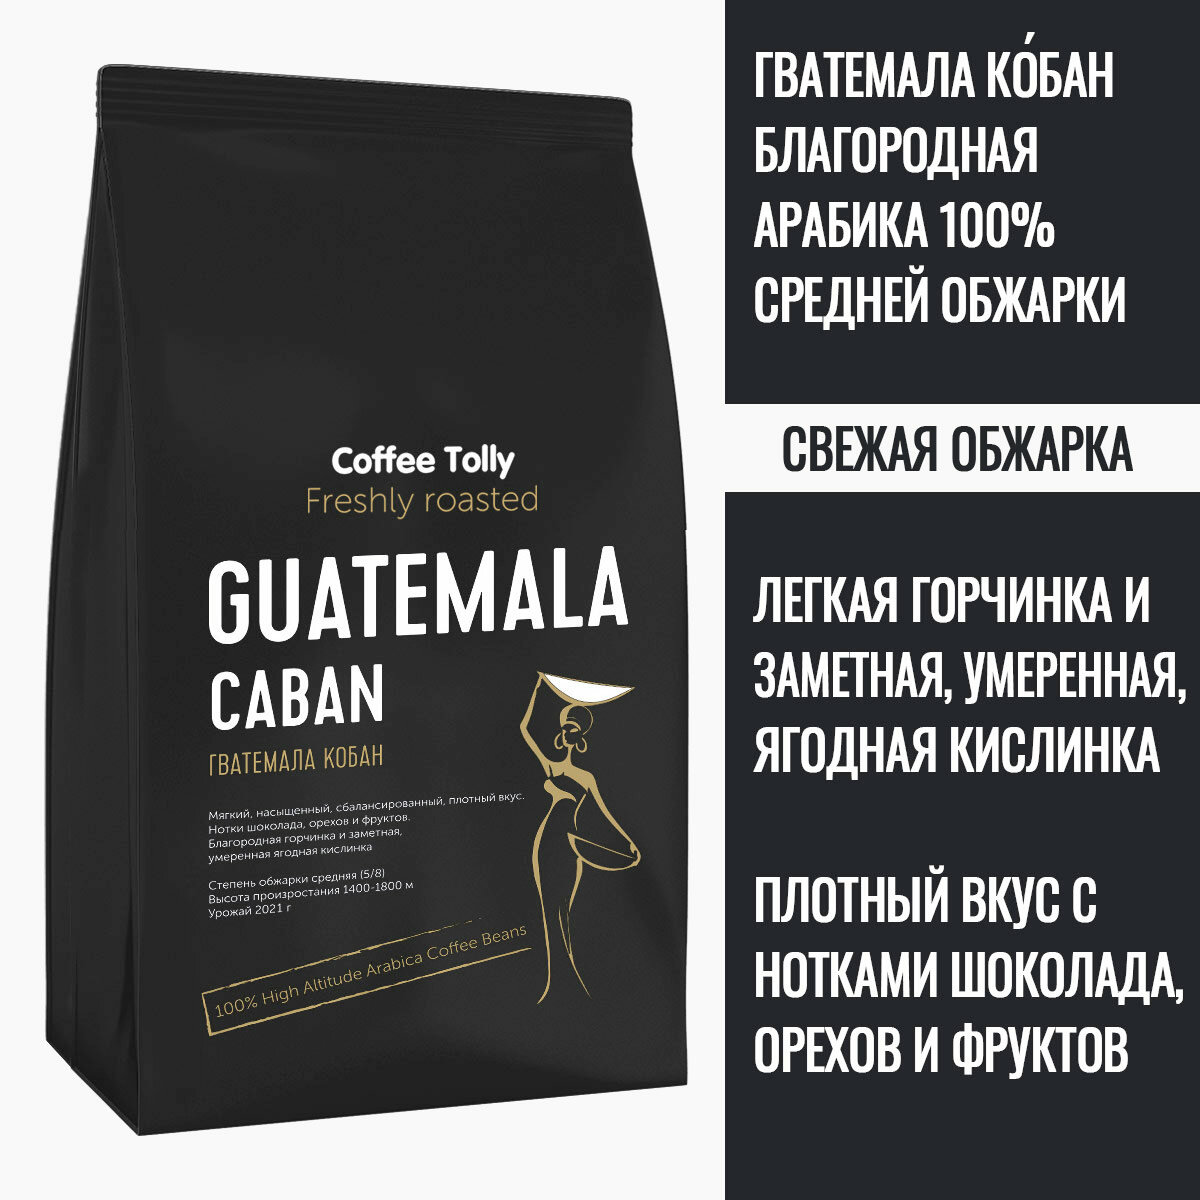 Guatemala Caban свежеобжаренный кофе в зернах 100 гр. / Арабика 100%